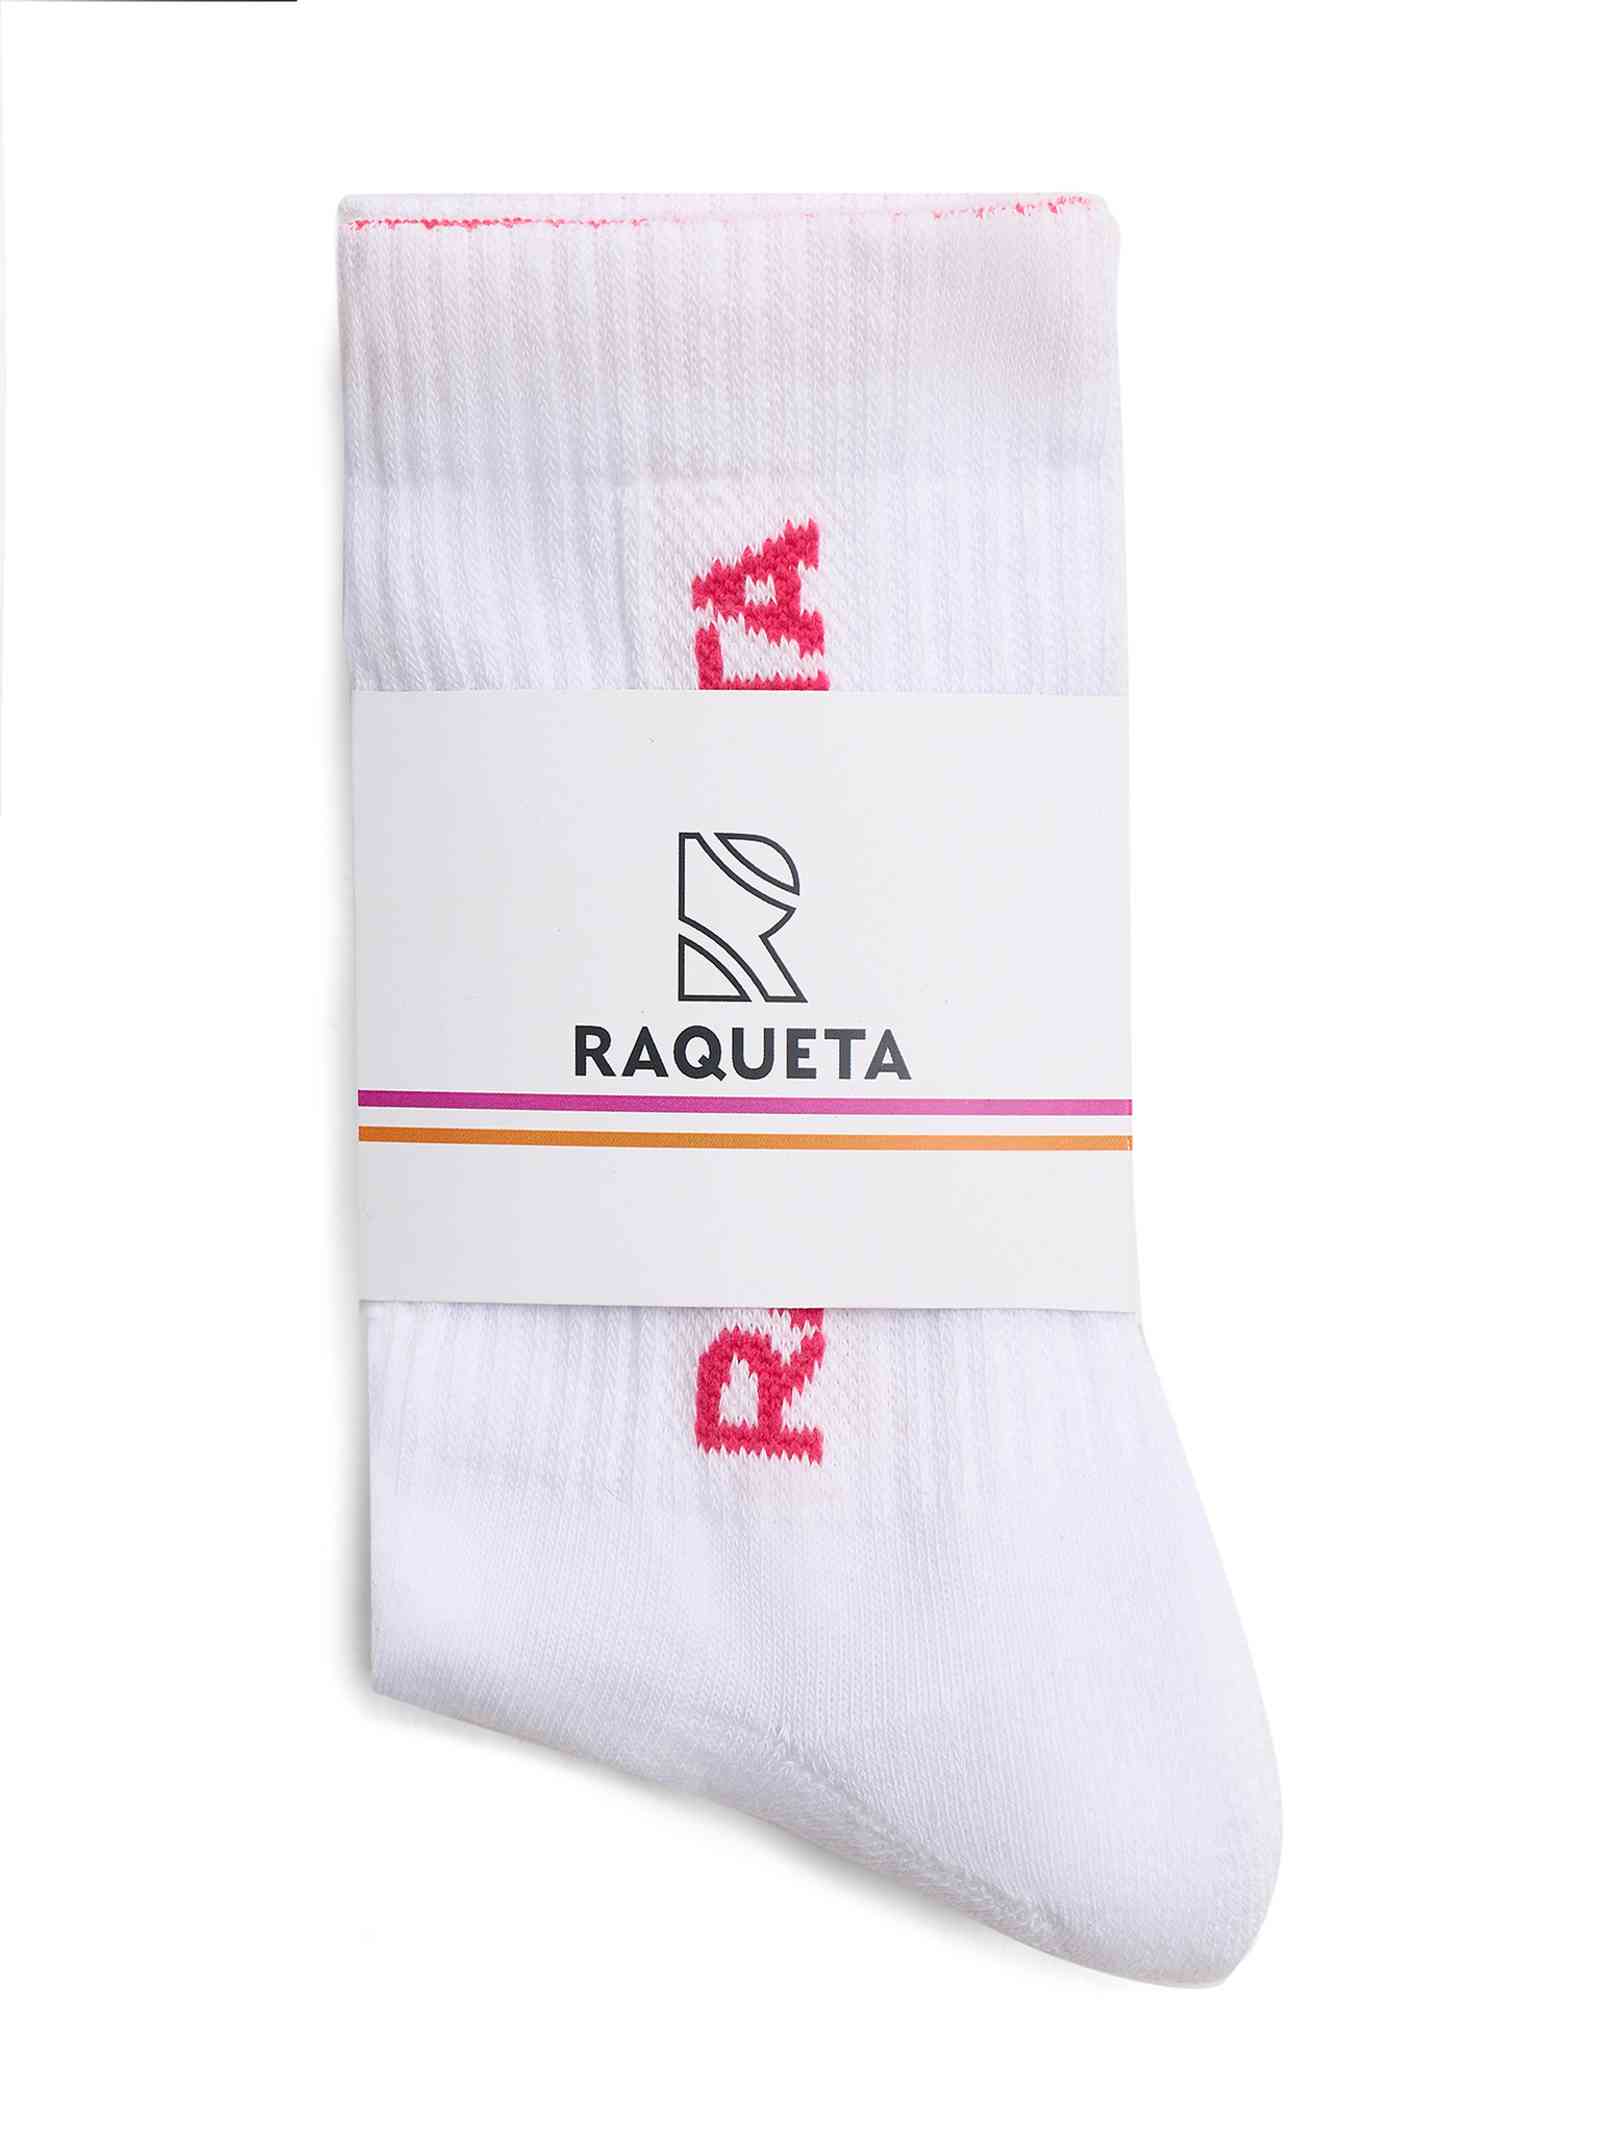 Подарок за покупку - сделай заказ на сумму от 3000 рублей на сайте Raqueta.ru и получи Носки Tenista, белые c розовым в подарок!